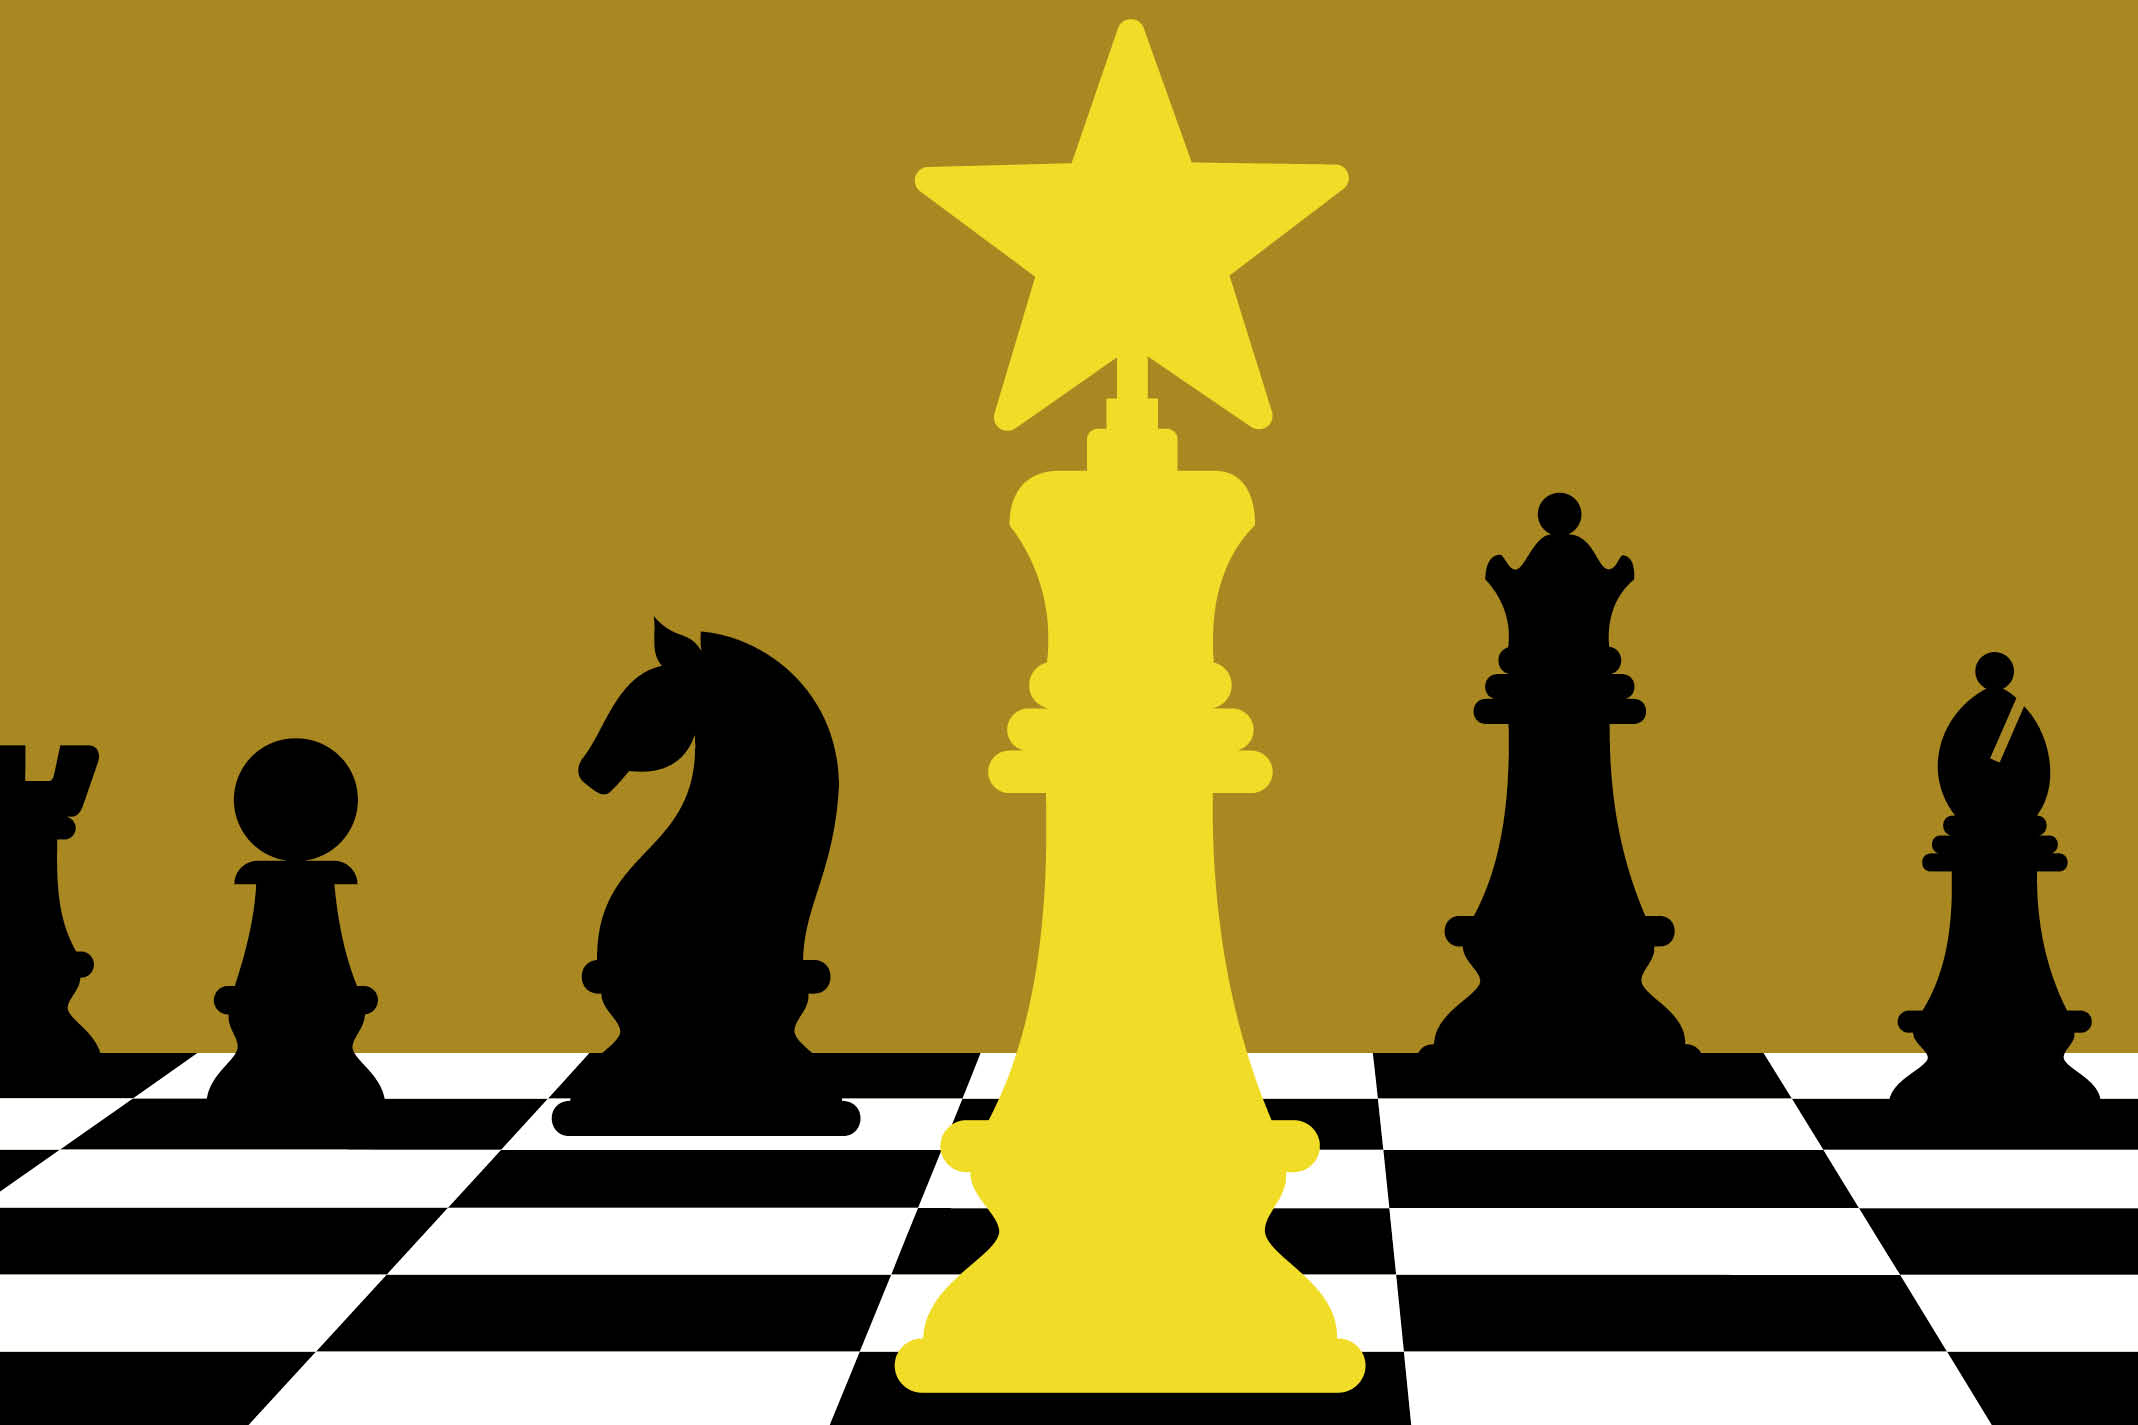 Fédération québécoise des échecs